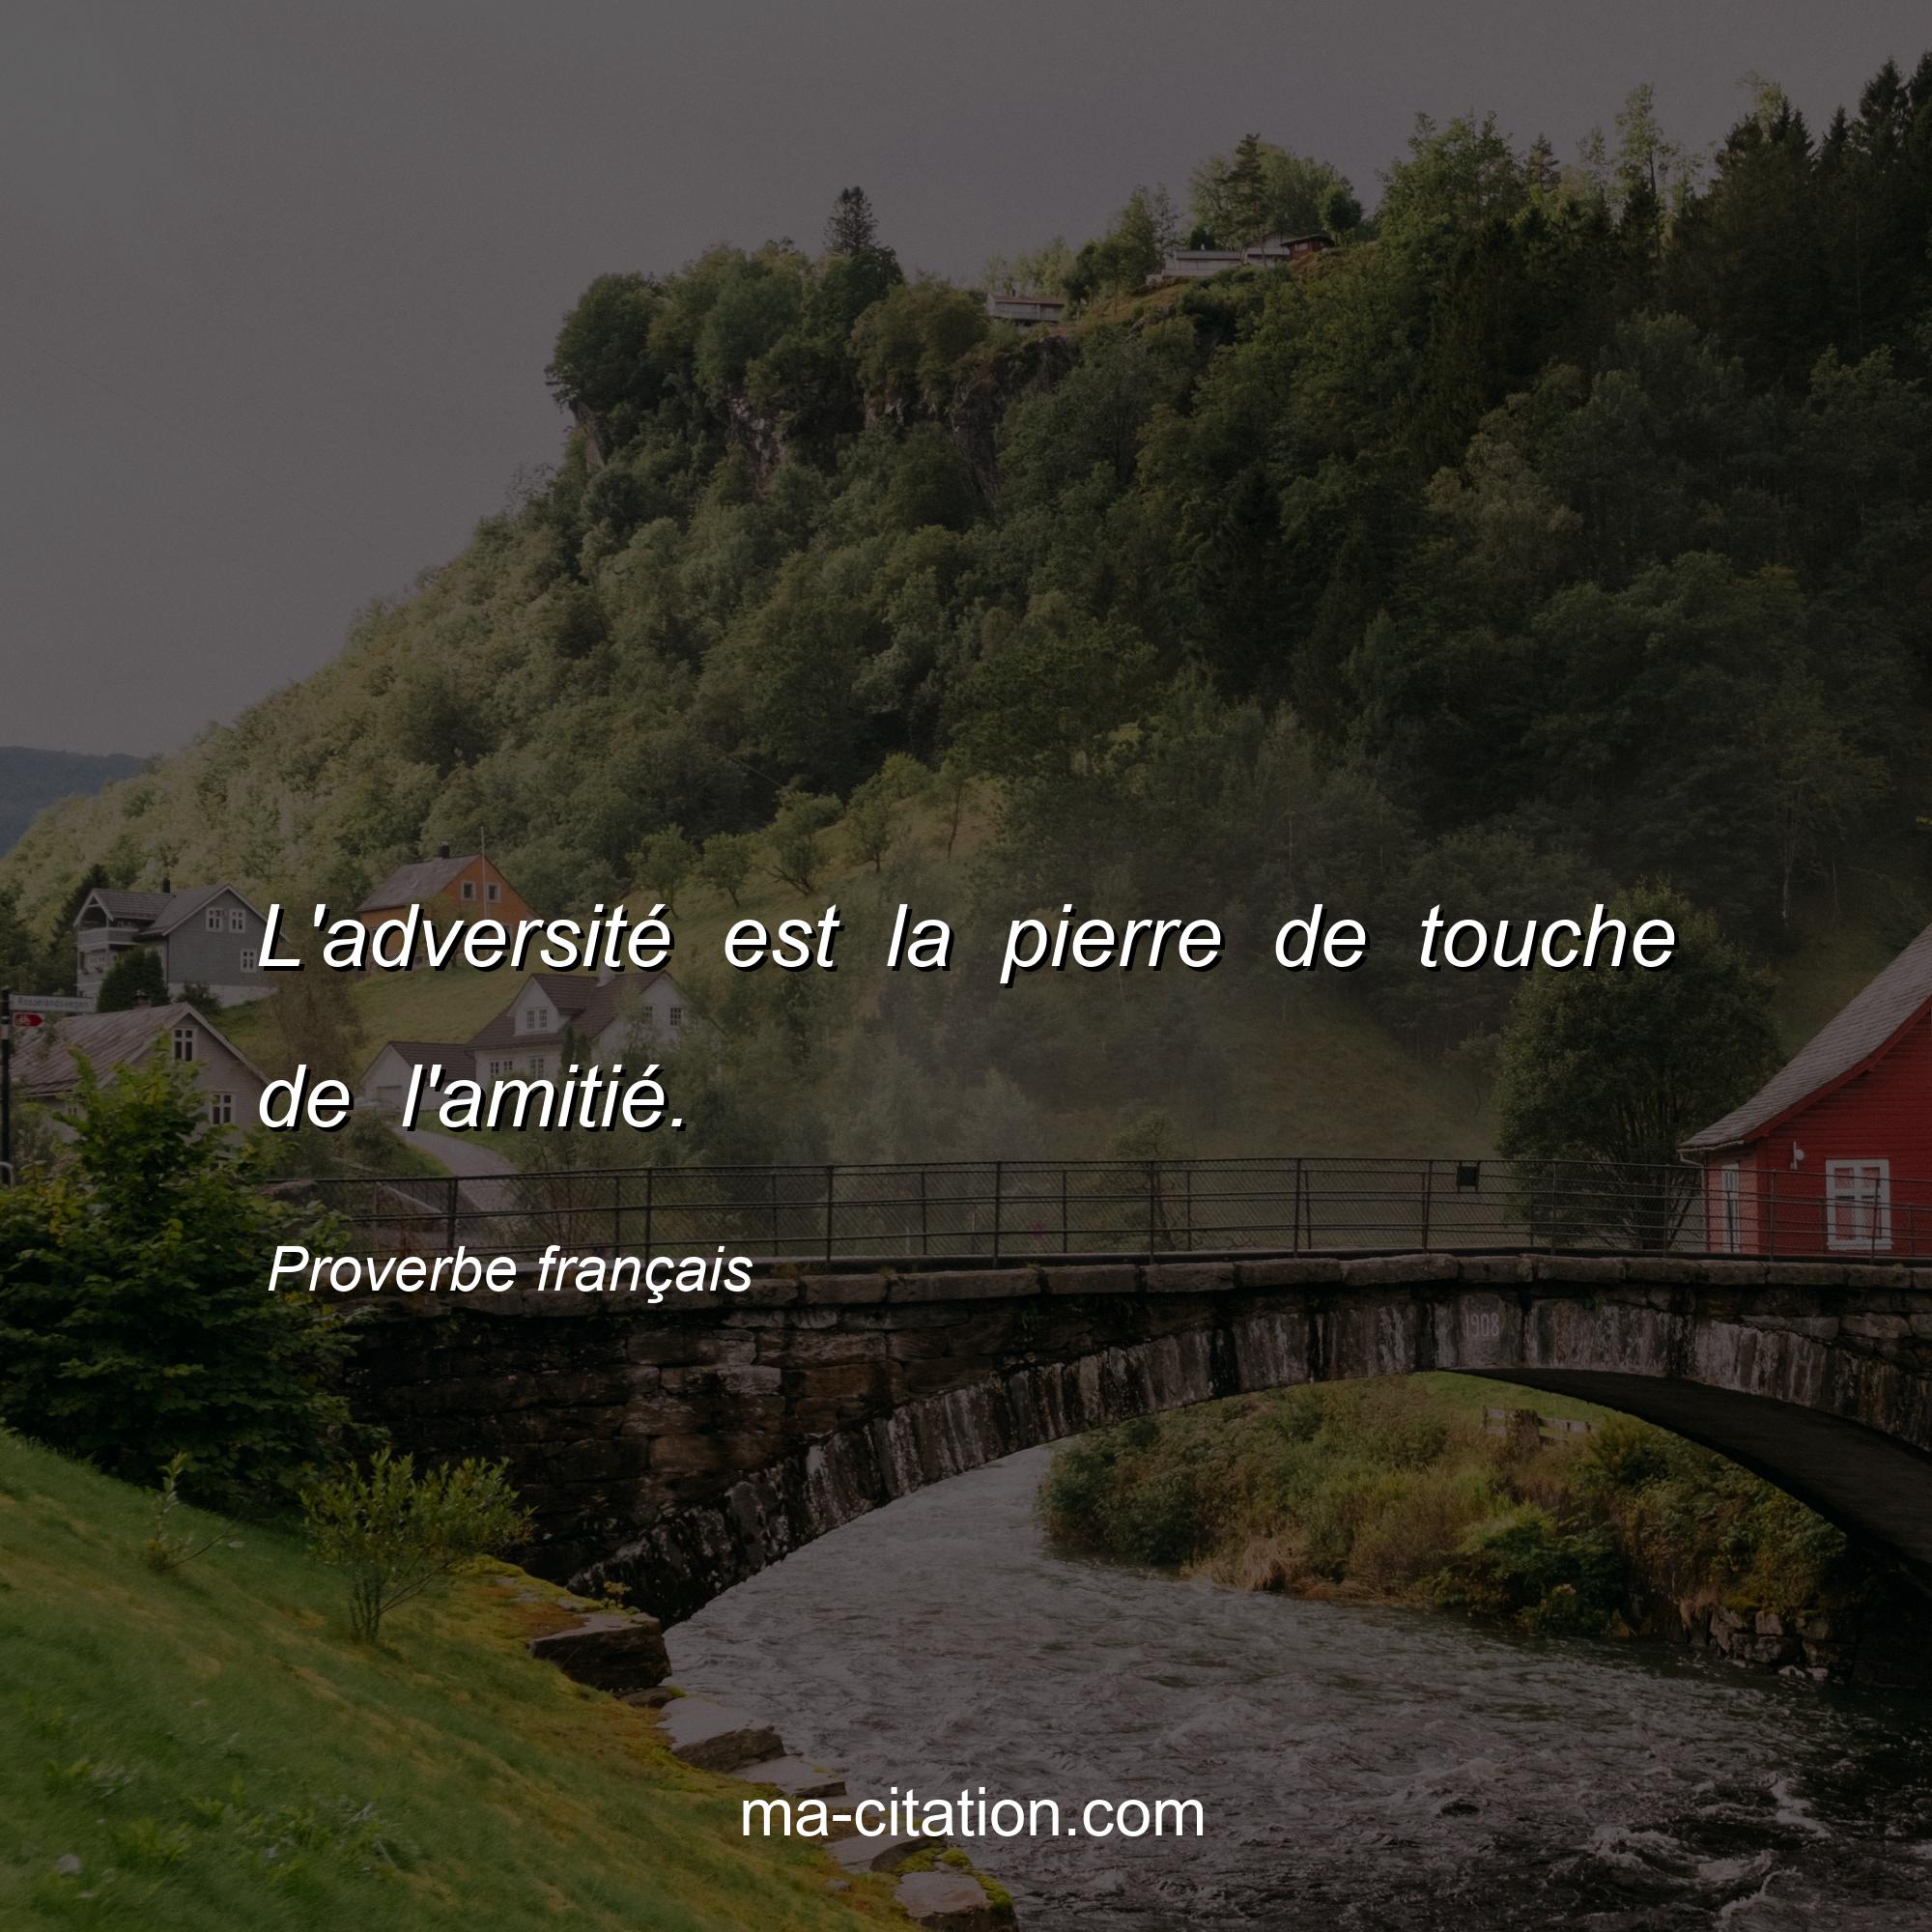 Proverbe français : L'adversité est la pierre de touche de l'amitié.